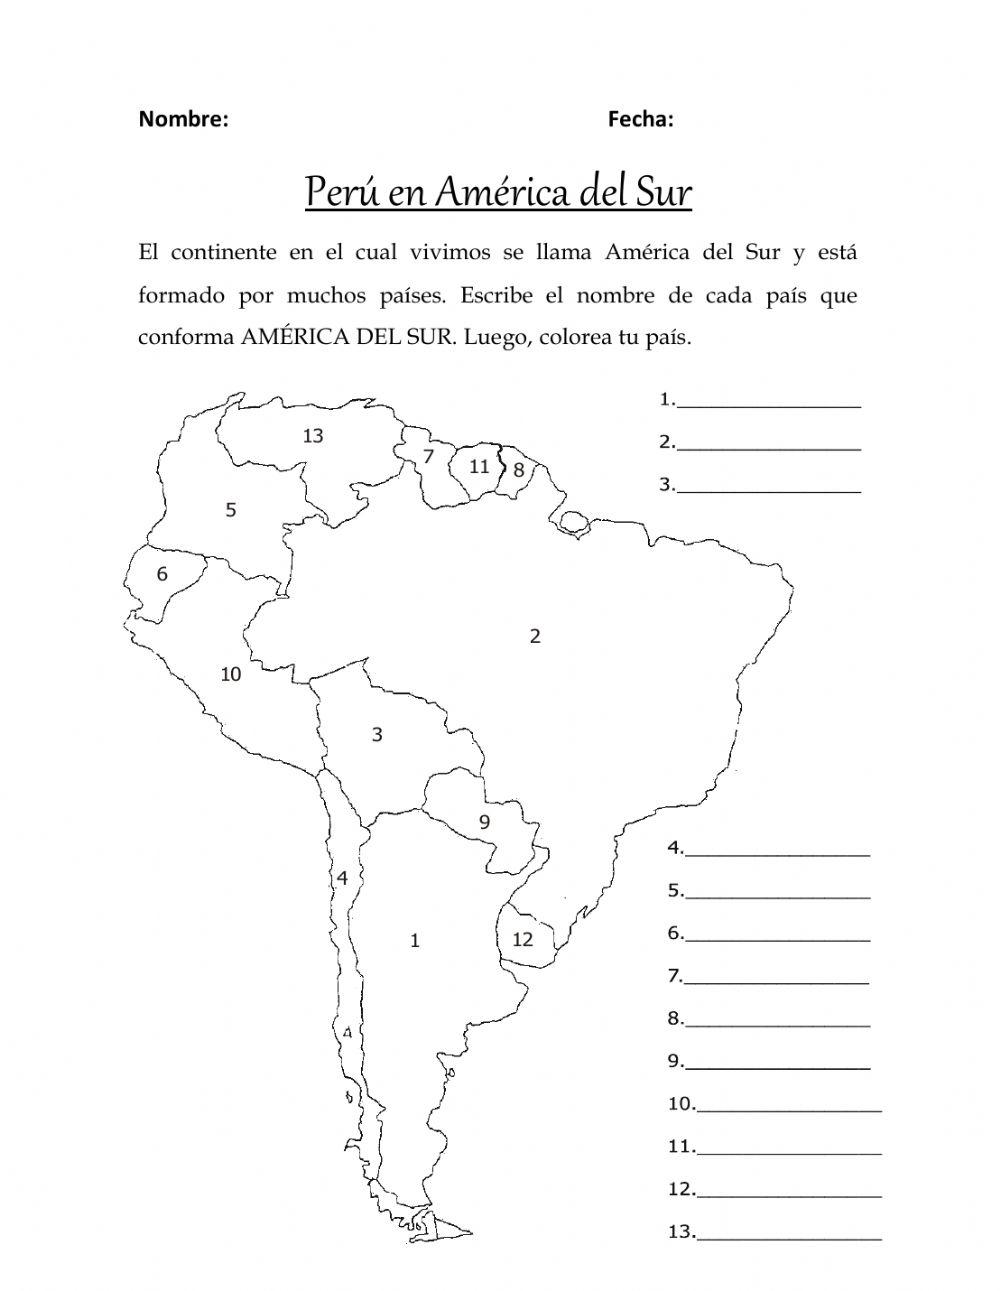 Países limítrofes del Perú